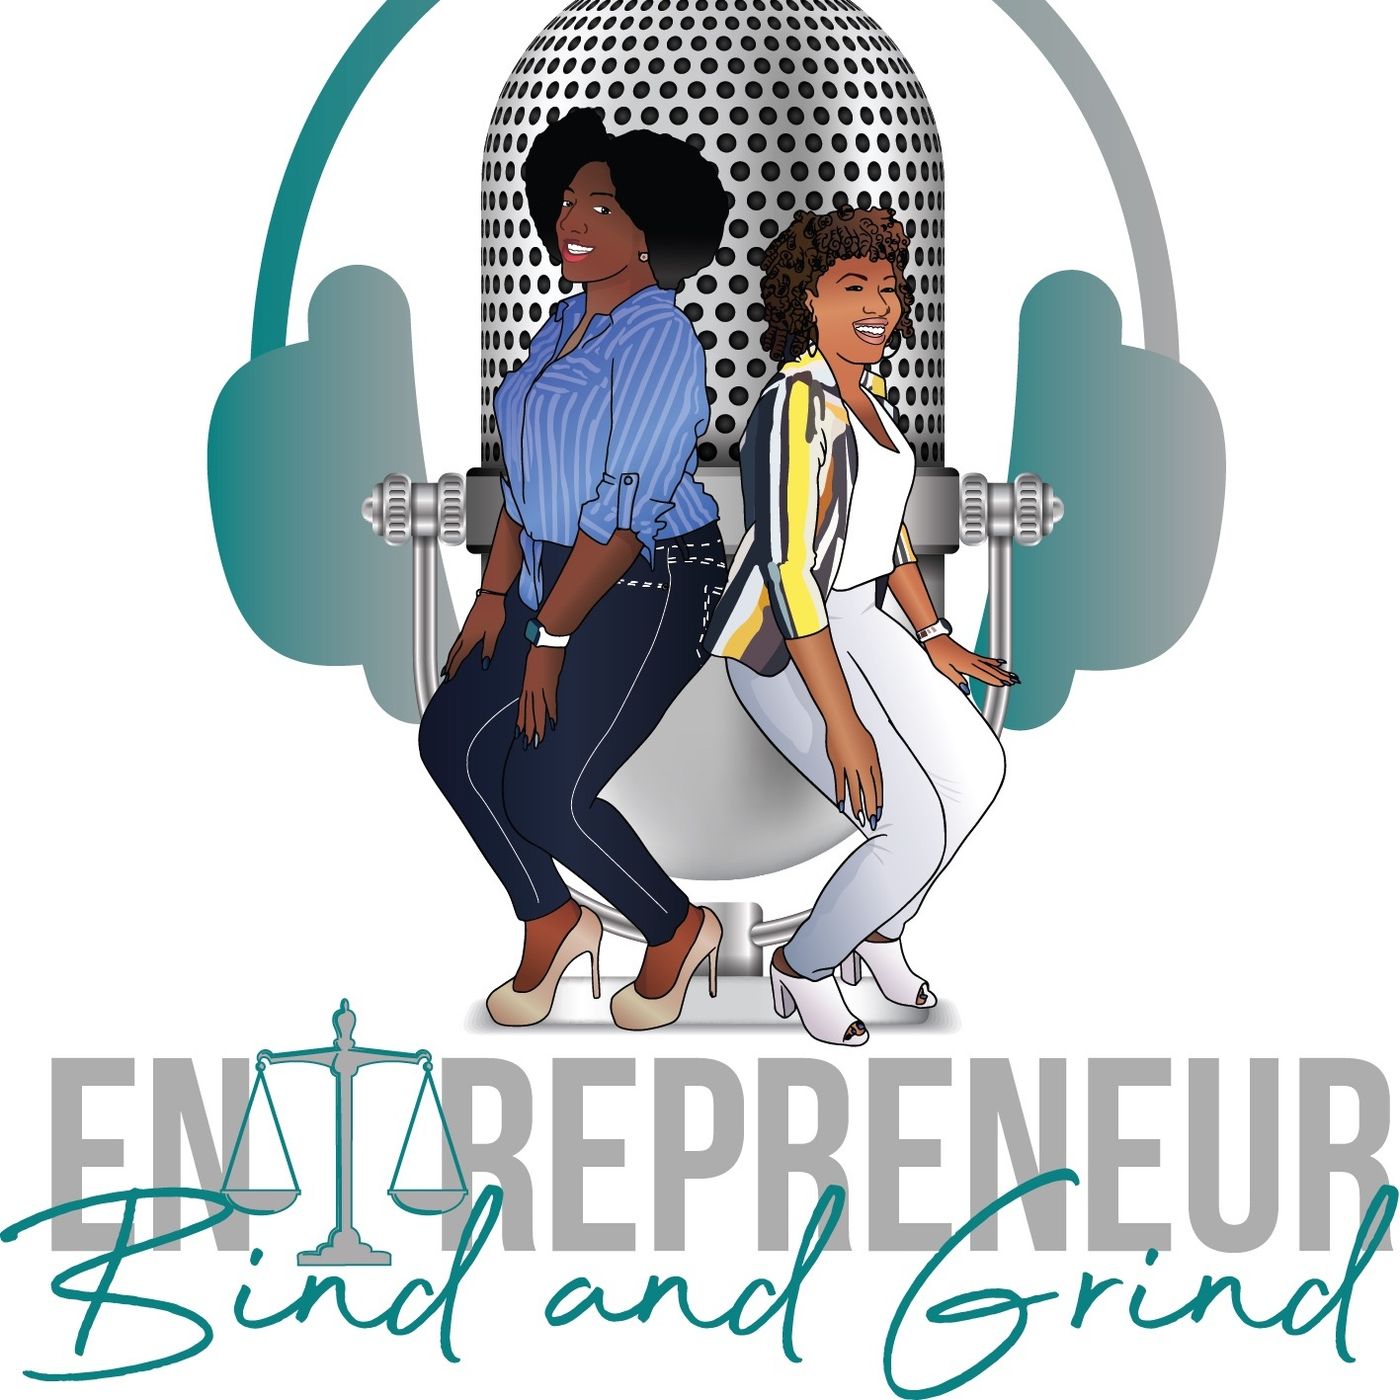 Entrepreneur Bind and Grind